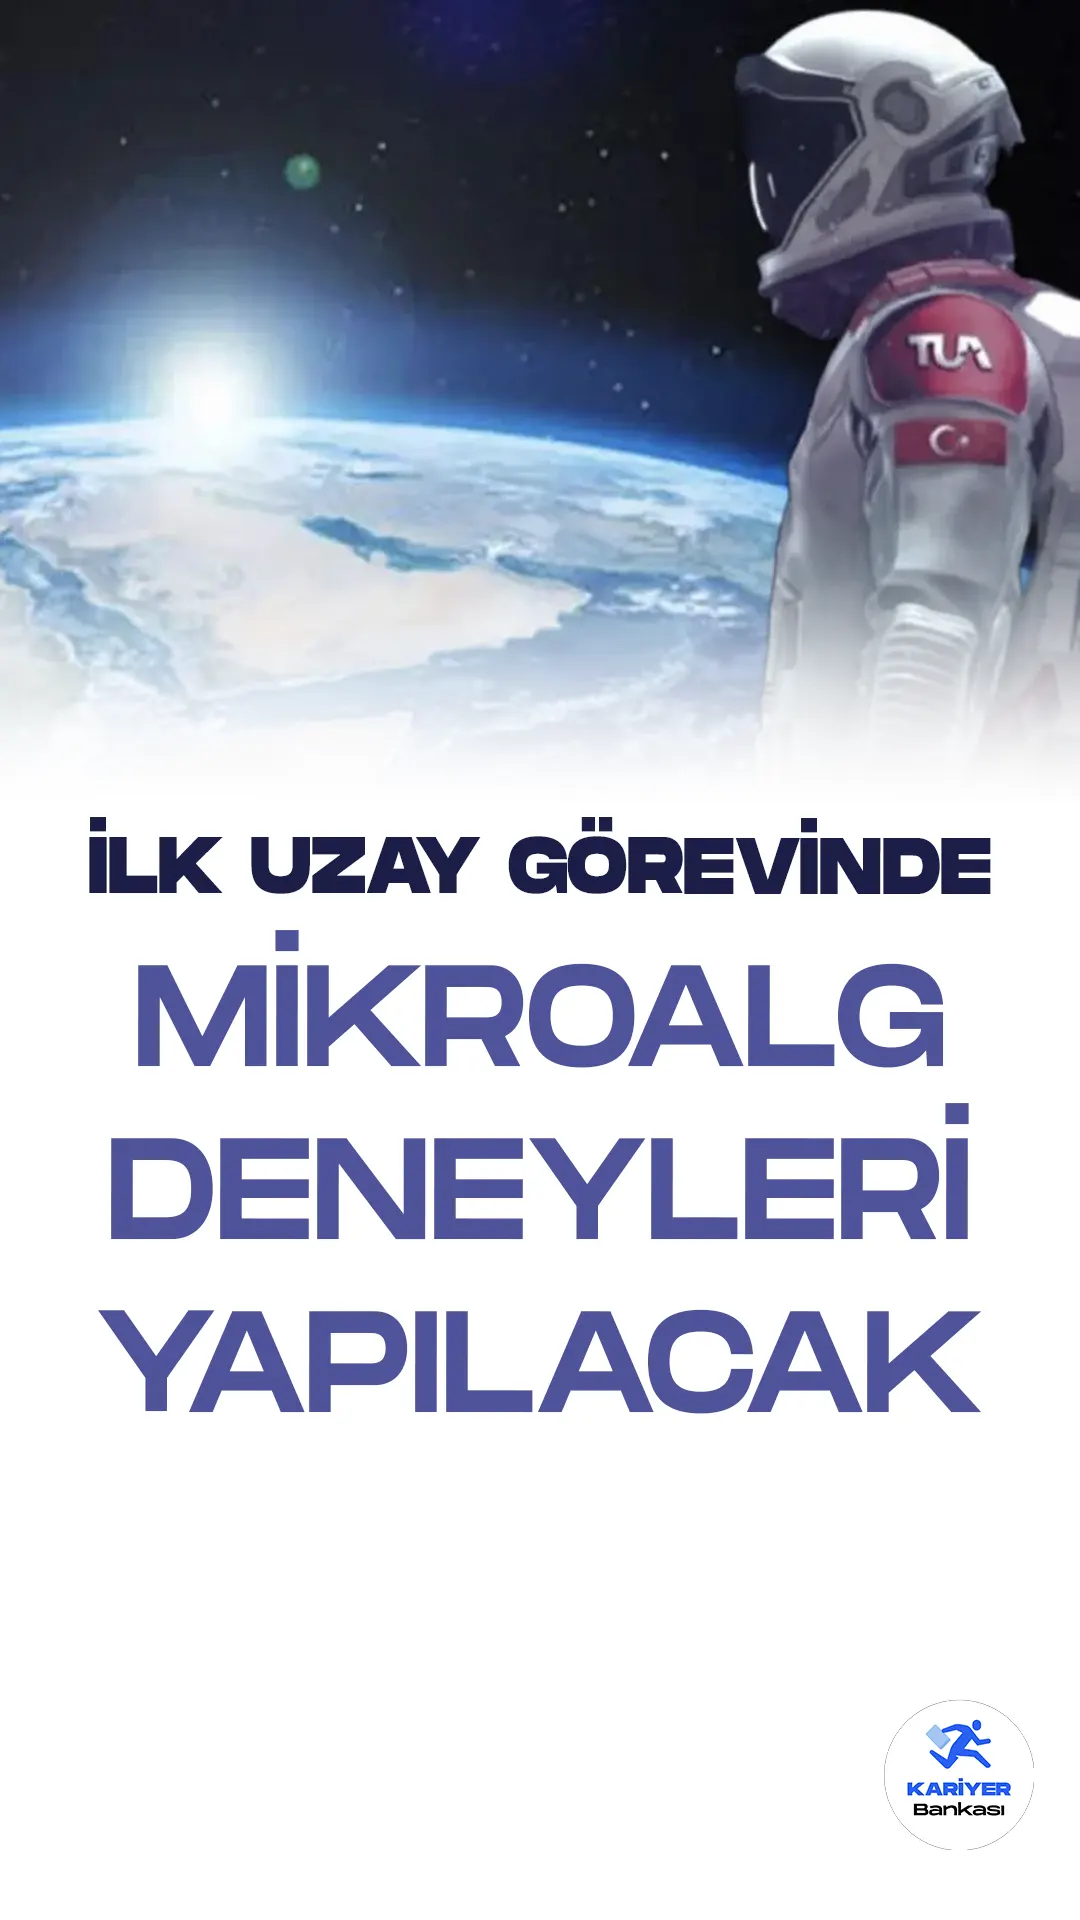 Türkiye'nin ilk insanlı uzay görevinde kullanılacak deneyler belirlendi. Türkiye Uzay Ajansı (TUA) ve TÜBİTAK Uzay Teknolojileri Araştırma Enstitüsü, Cumhuriyetin 100. yılında gerçekleştirilecek olan bu önemli görev için Ulusal Antarktika Bilim Seferi'nden getirilen mikroalgleri kullanmayı planlıyor.